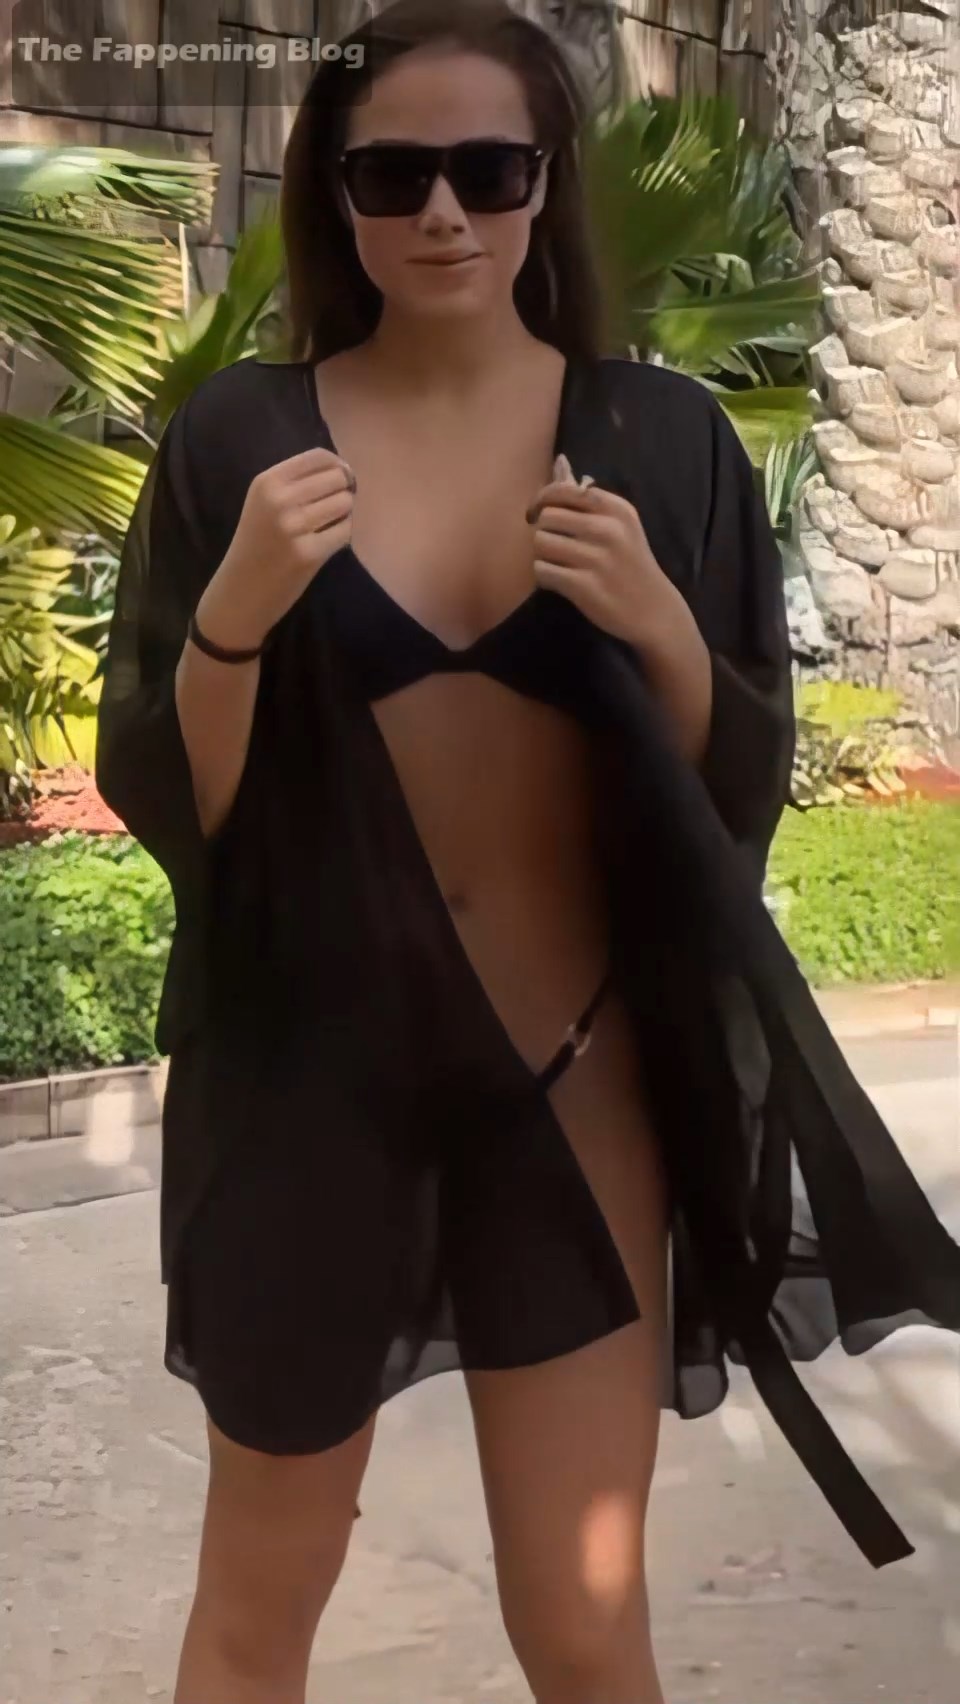 Alina Zagitova Looks Hot in a Bikini (6 Pics + Video)